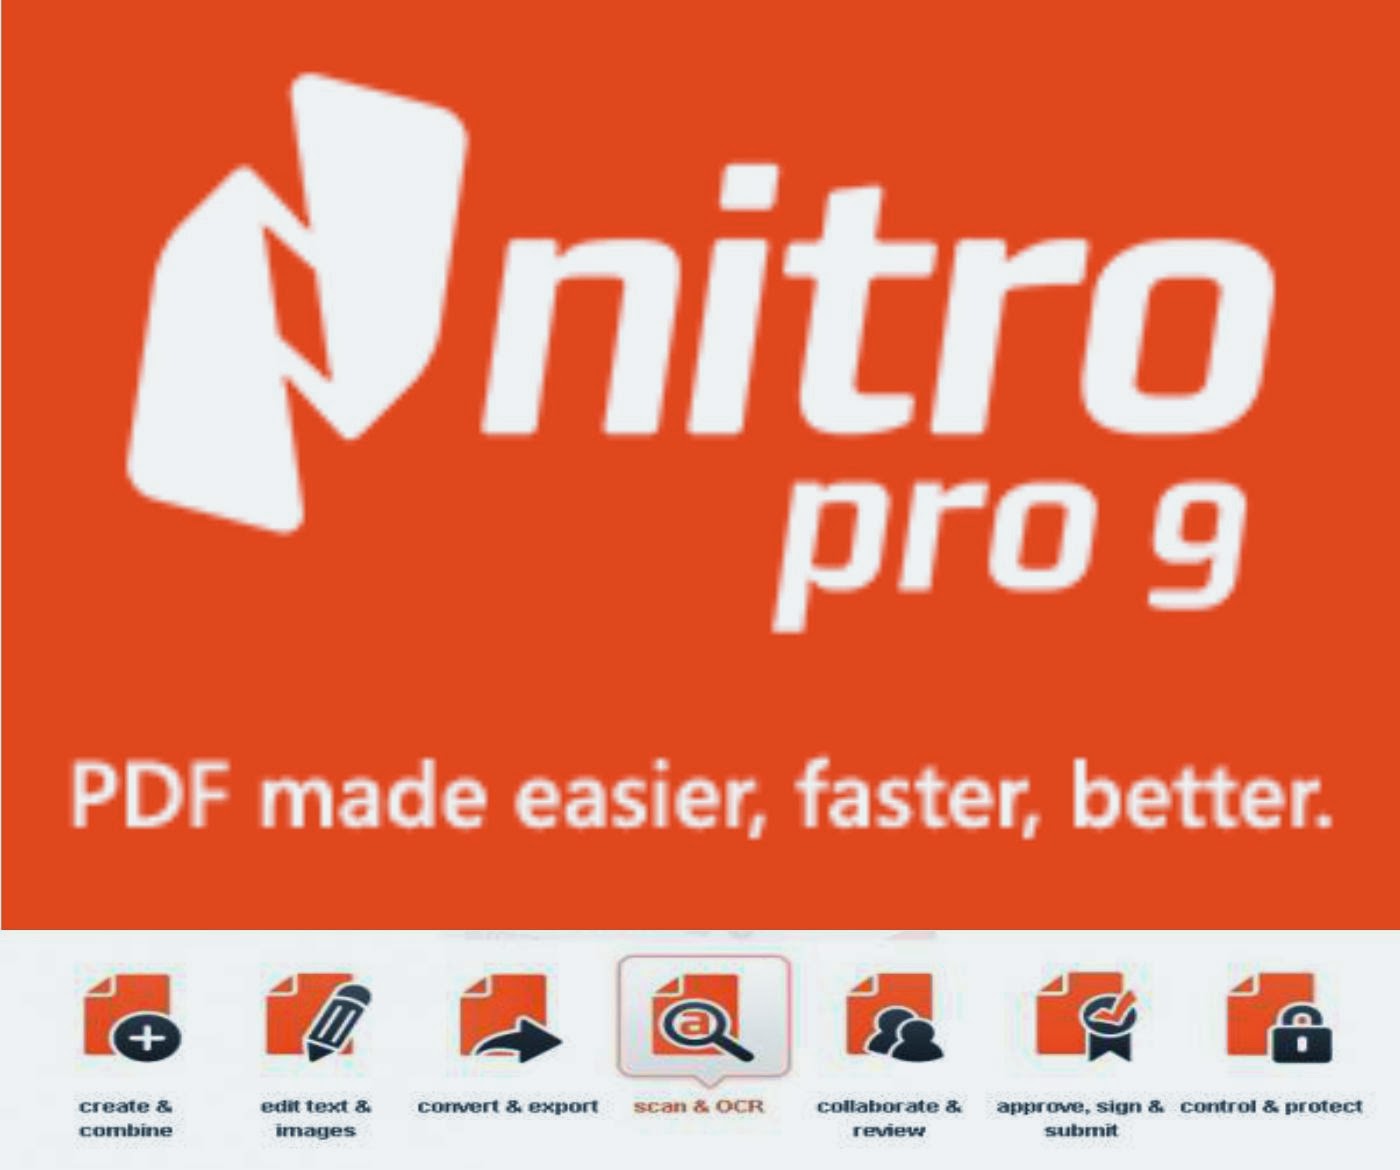 Nitro Pdf Pro Free Download